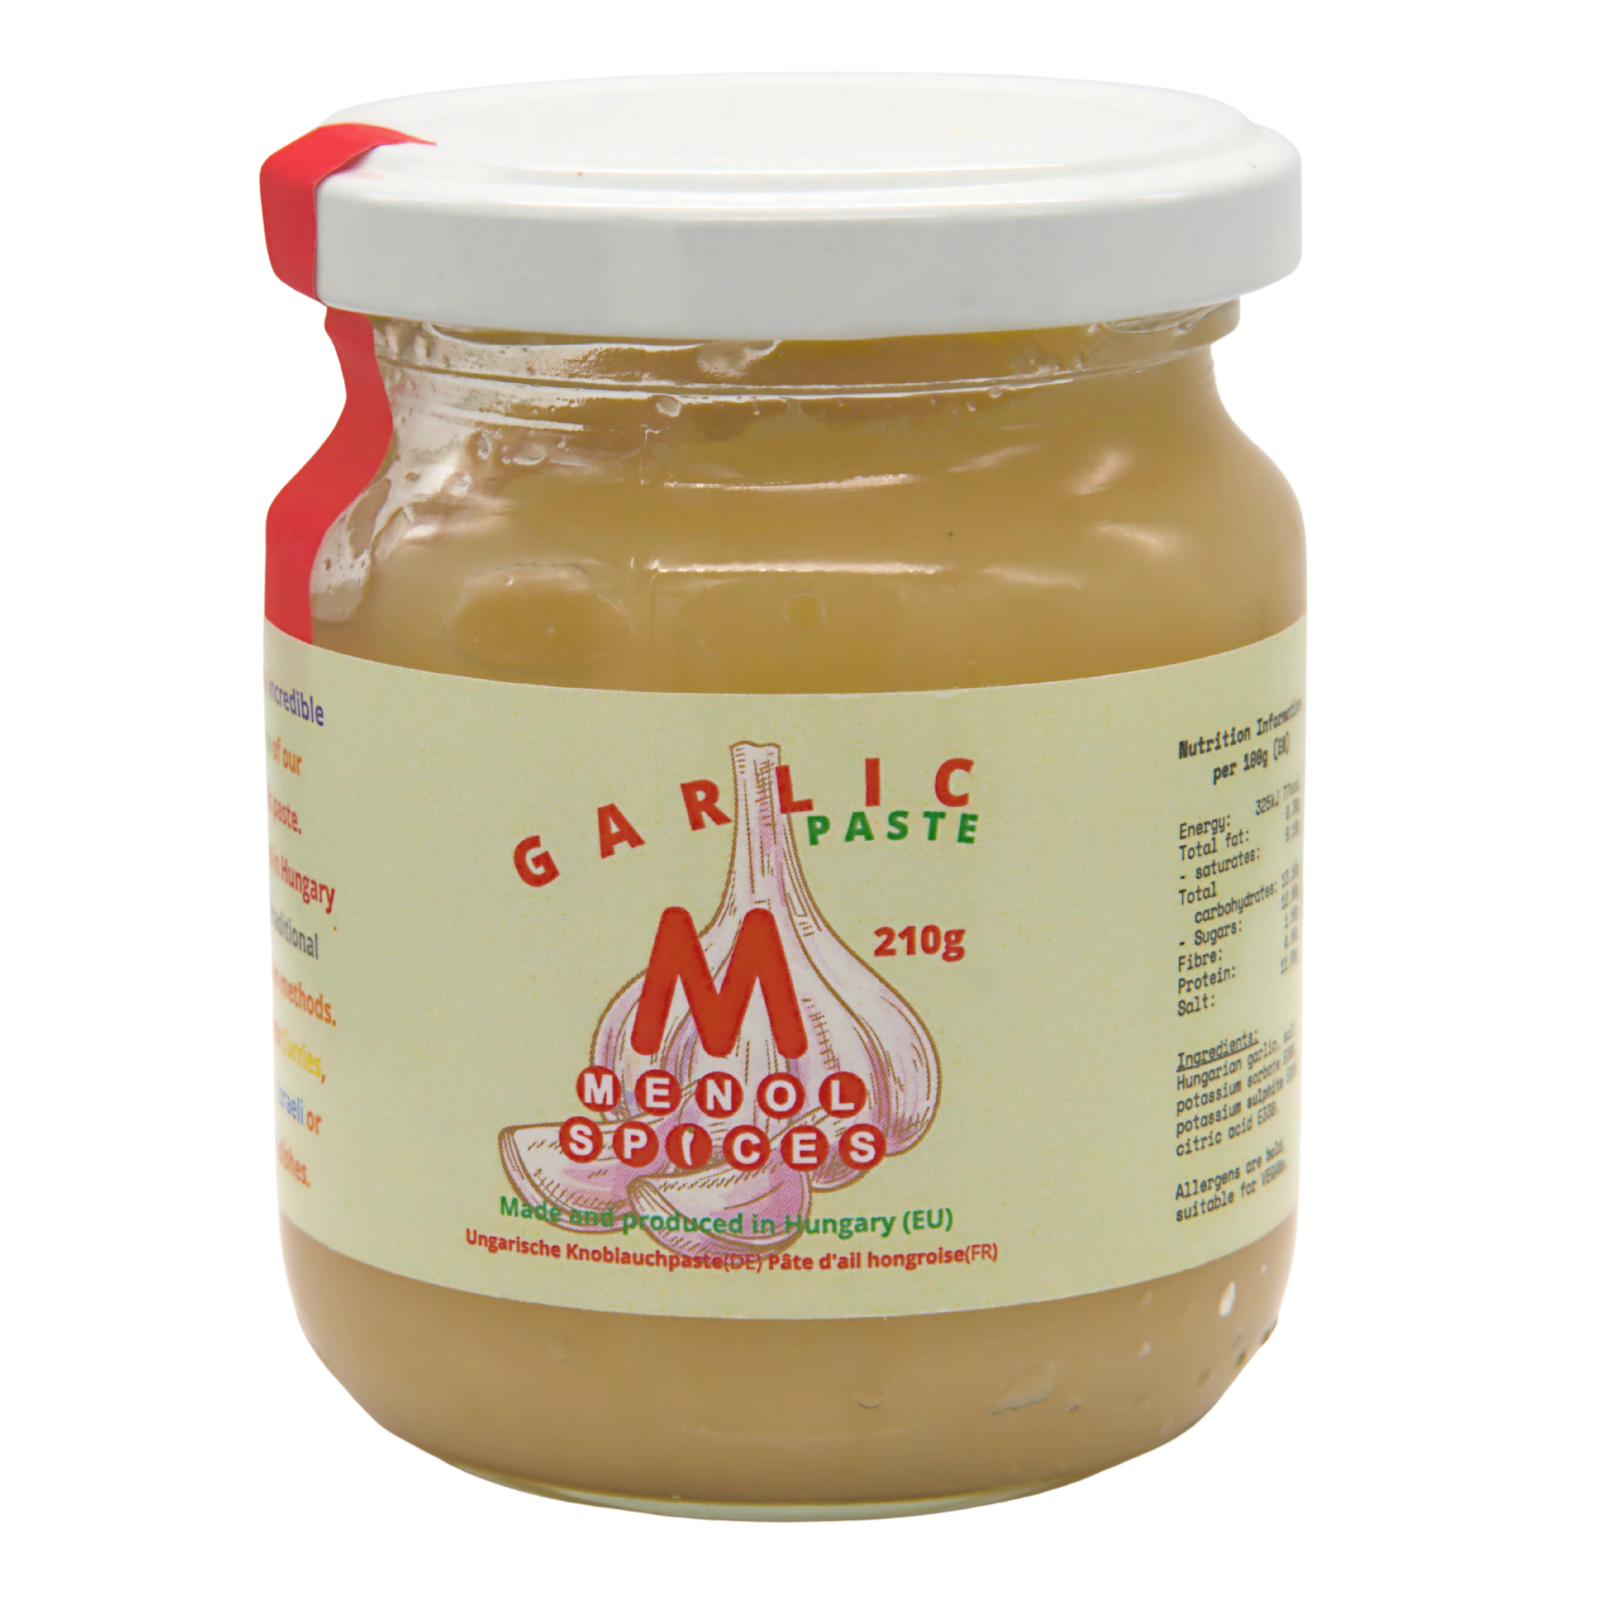 Menol Spices Garlic Paste 7.4oz / 210g